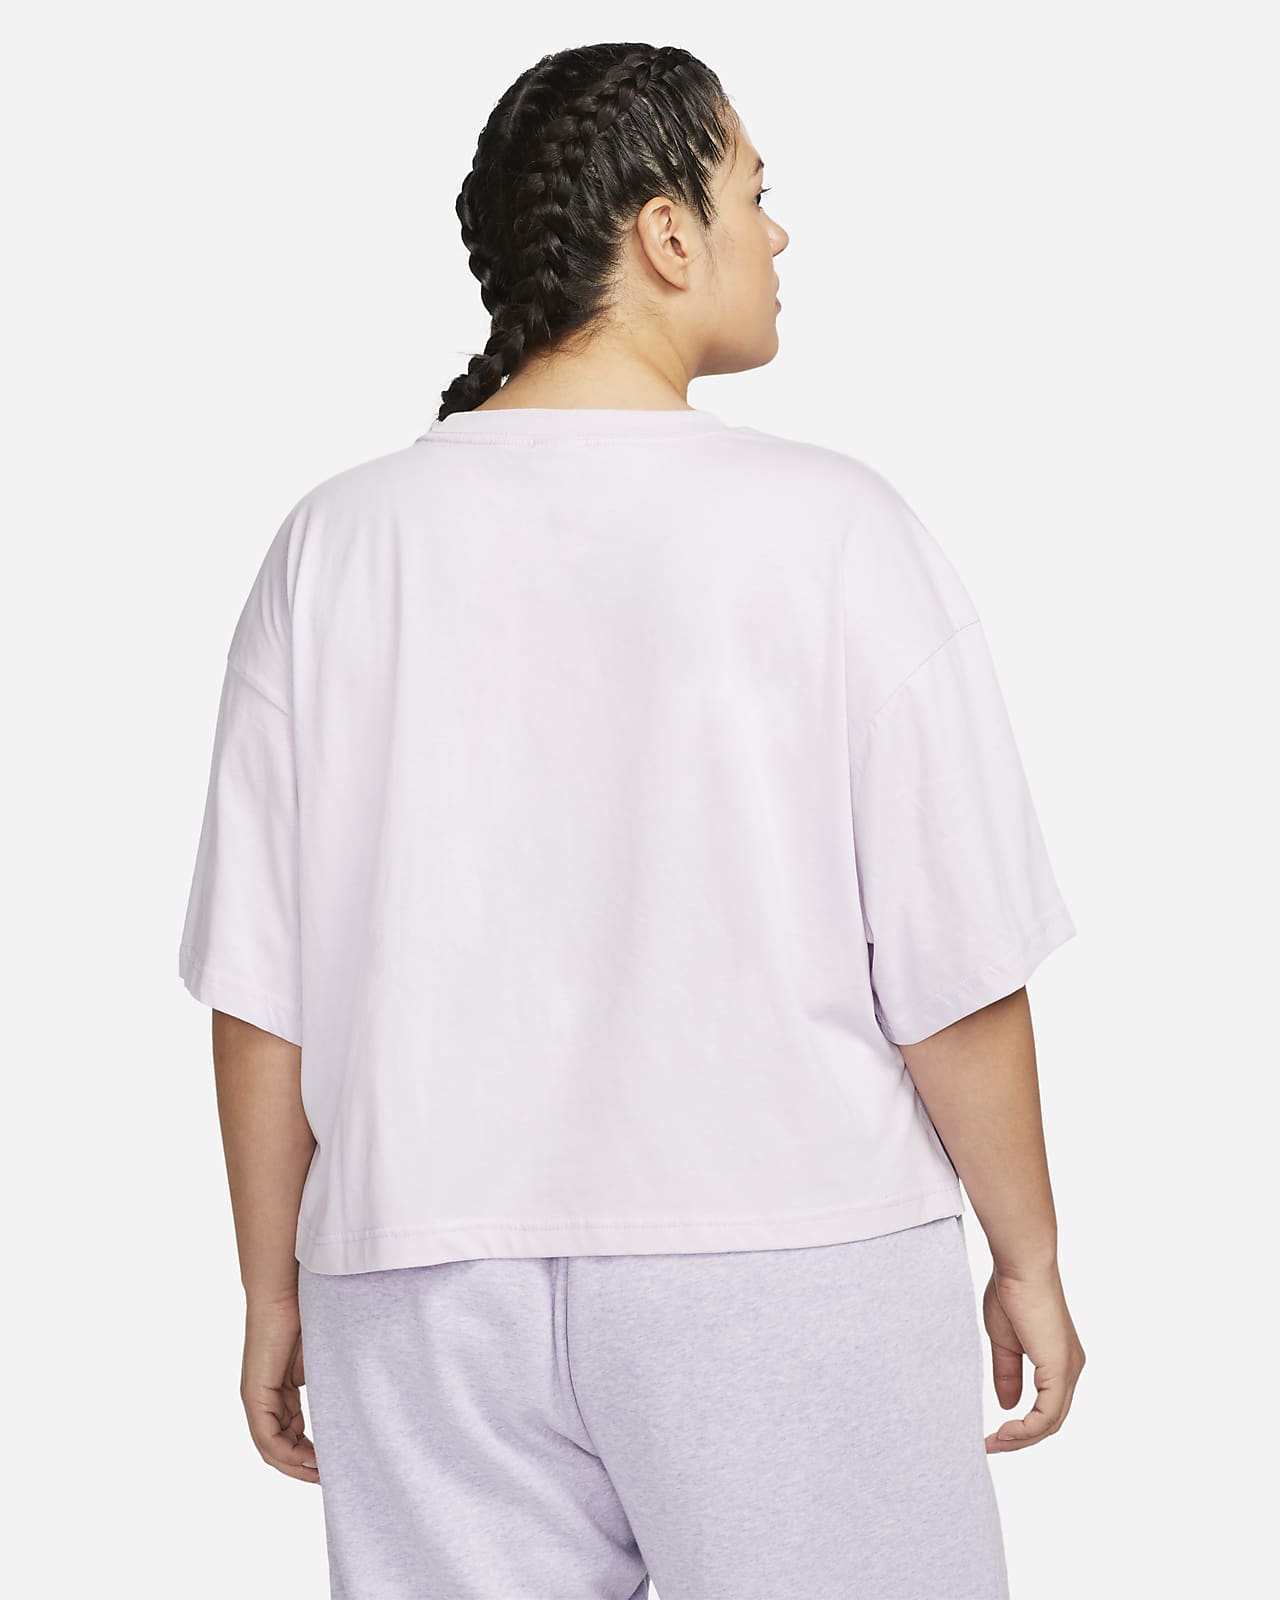 Nike Sportswear Swoosh Women's Short-Sleeve Top (Plus Size). .com